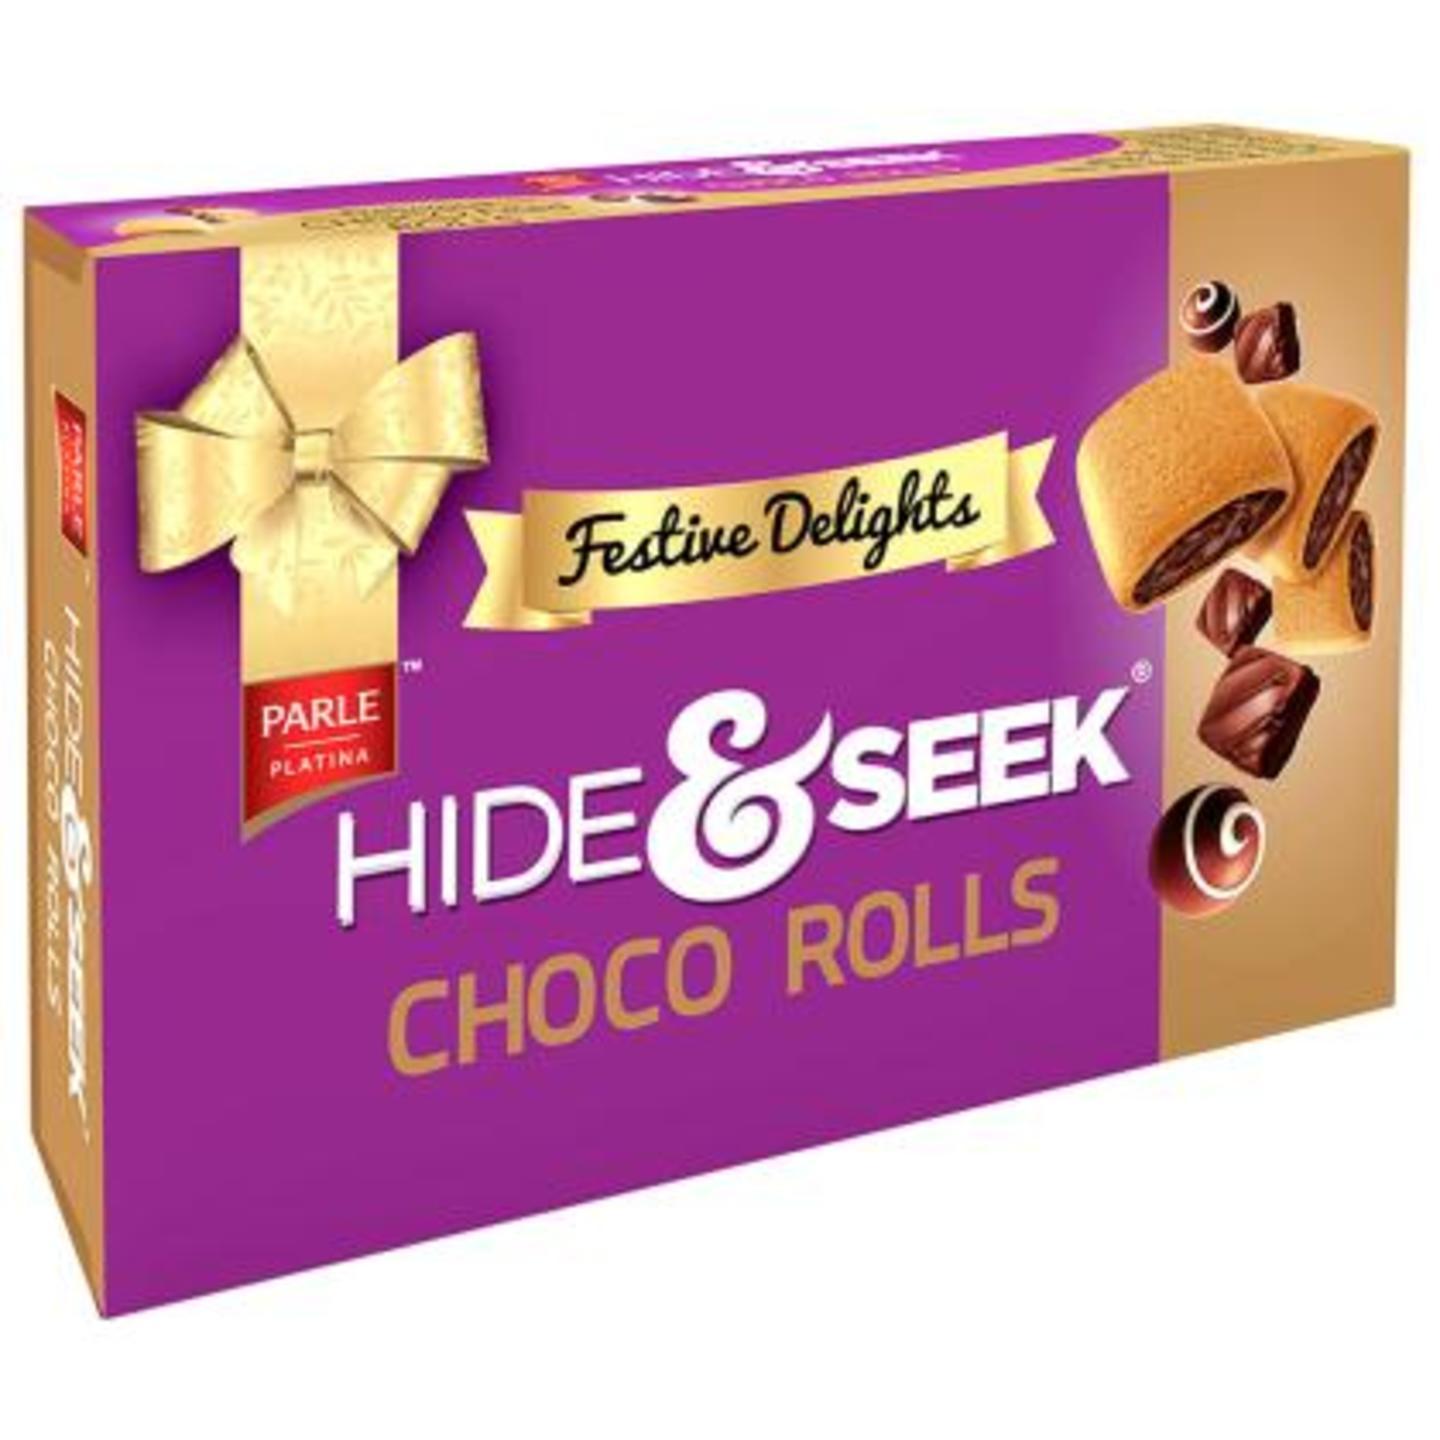 Parle Hide & Seek Choco Rolls 250 g